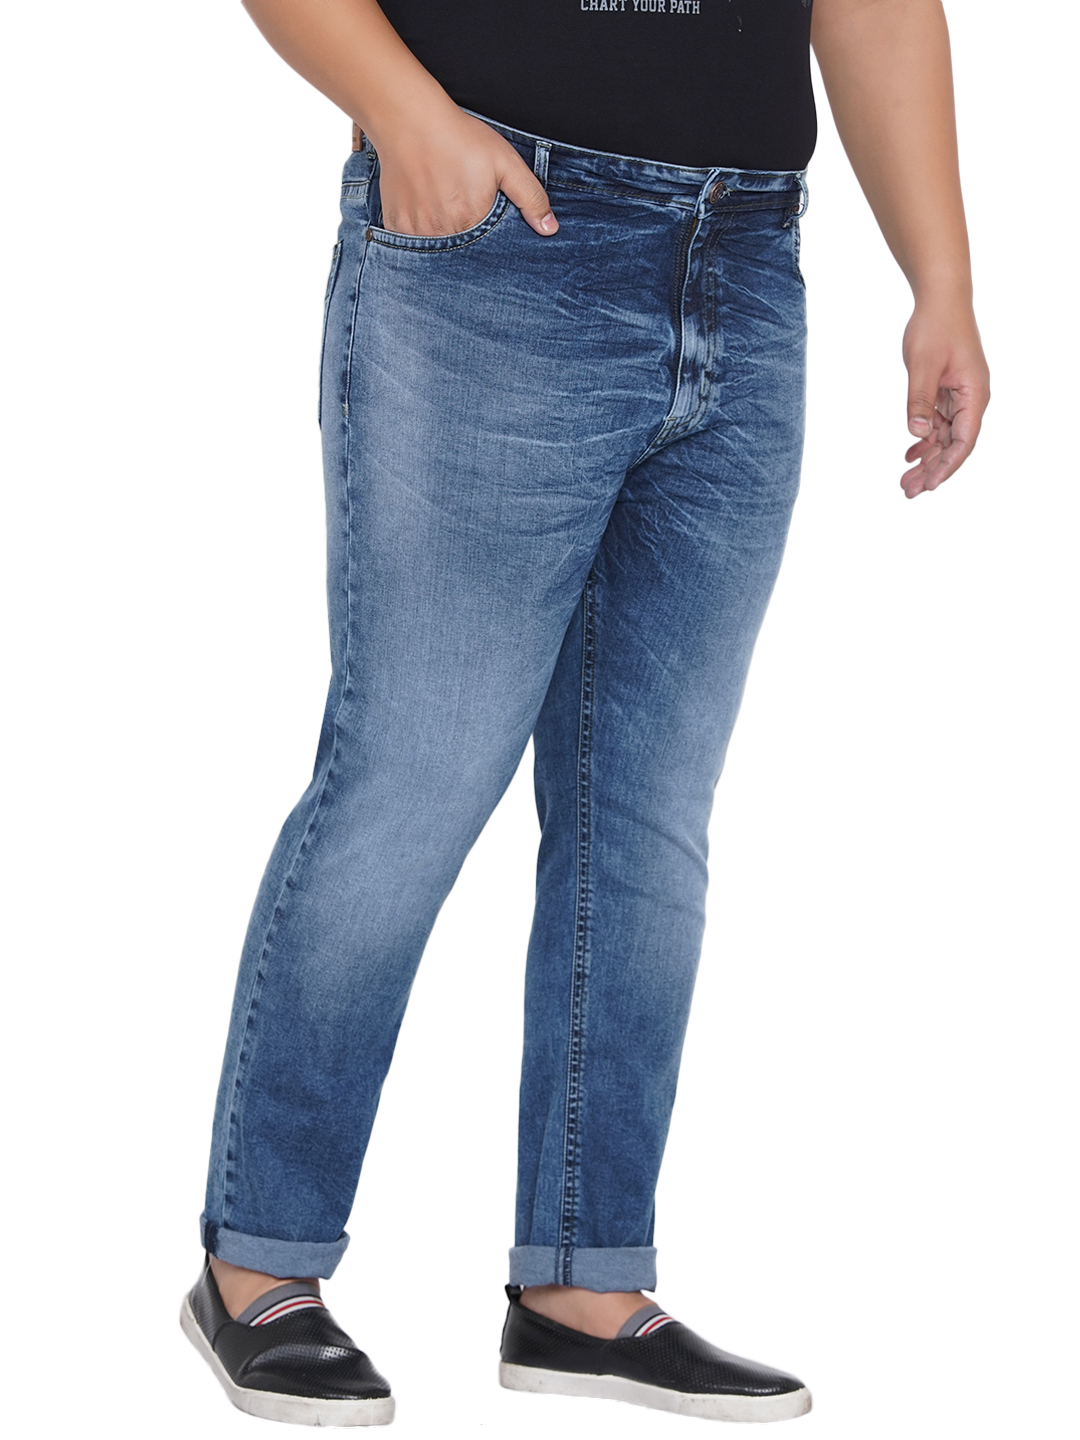 bottomwear/jeans/JPJ12204/jpj12204-3.jpg